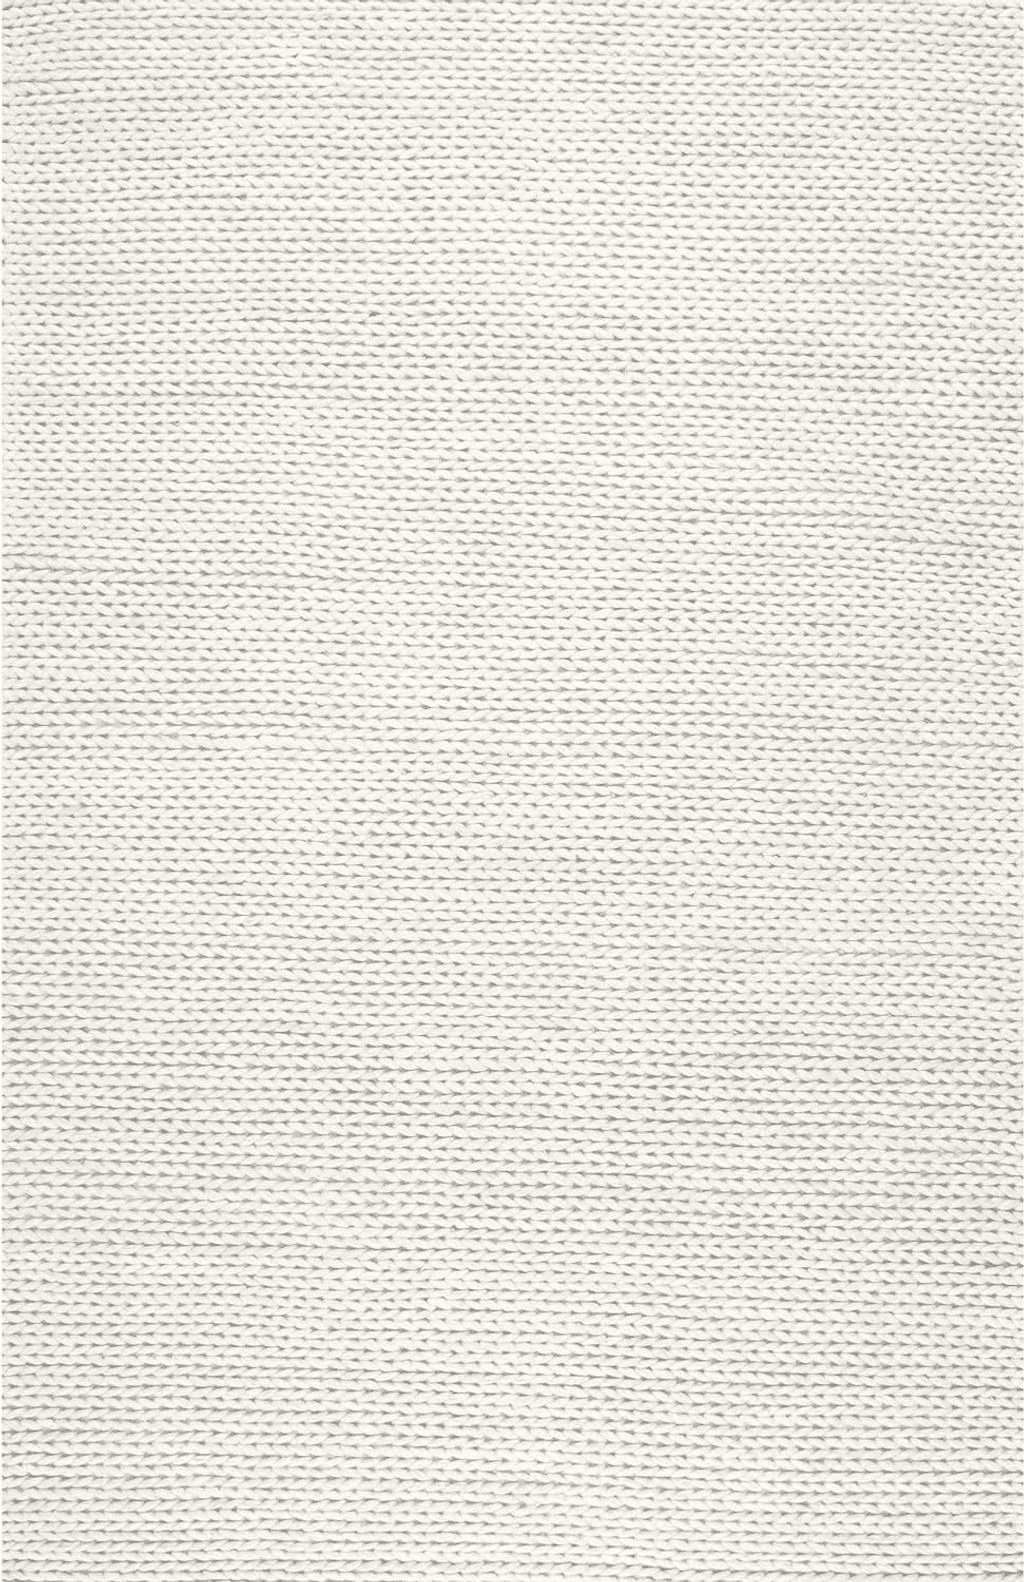 Flatweave nuLOOM Penelope Braided Wool Area Rug, 4' x 6', Off-White